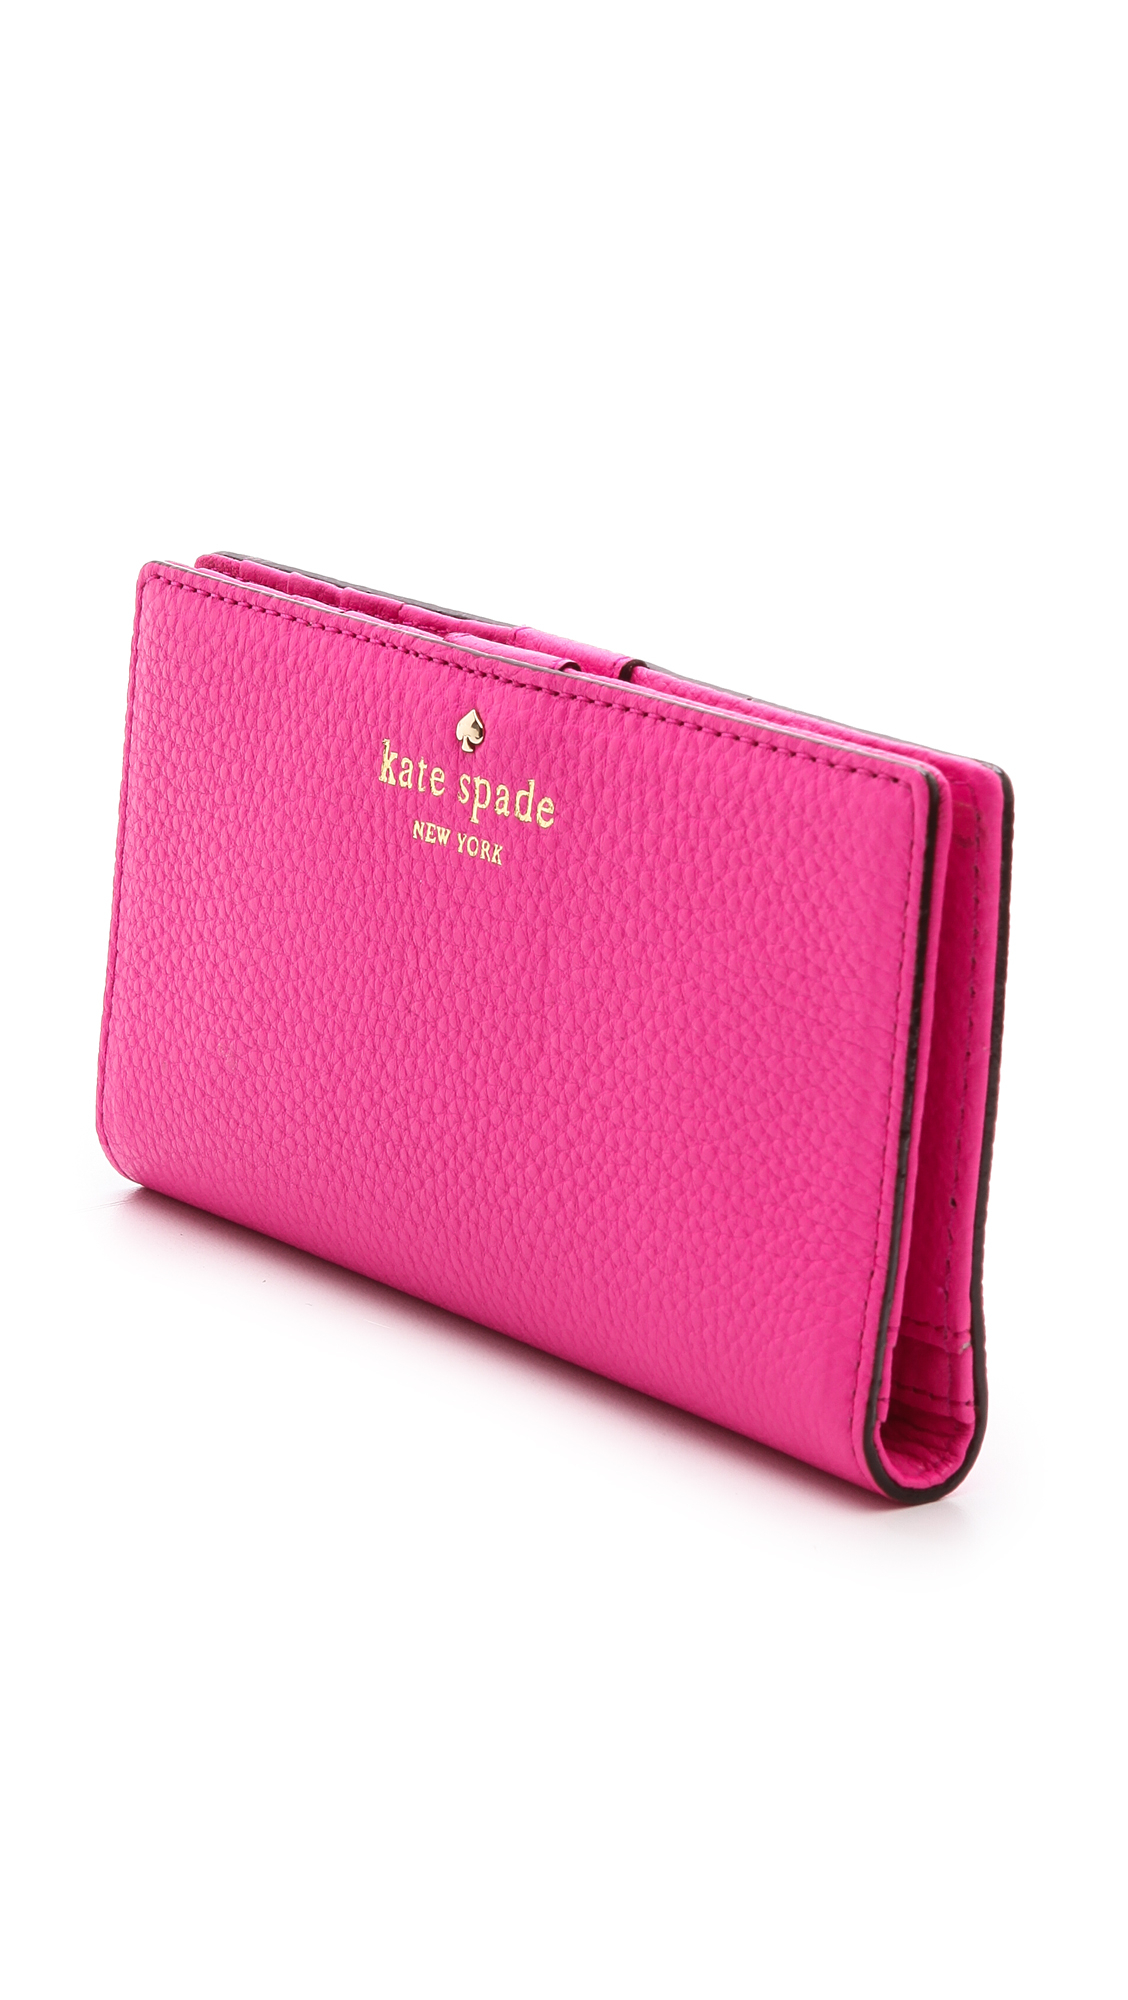 Kate spade new york Cedar Street Stacy Wallet in Pink | Lyst